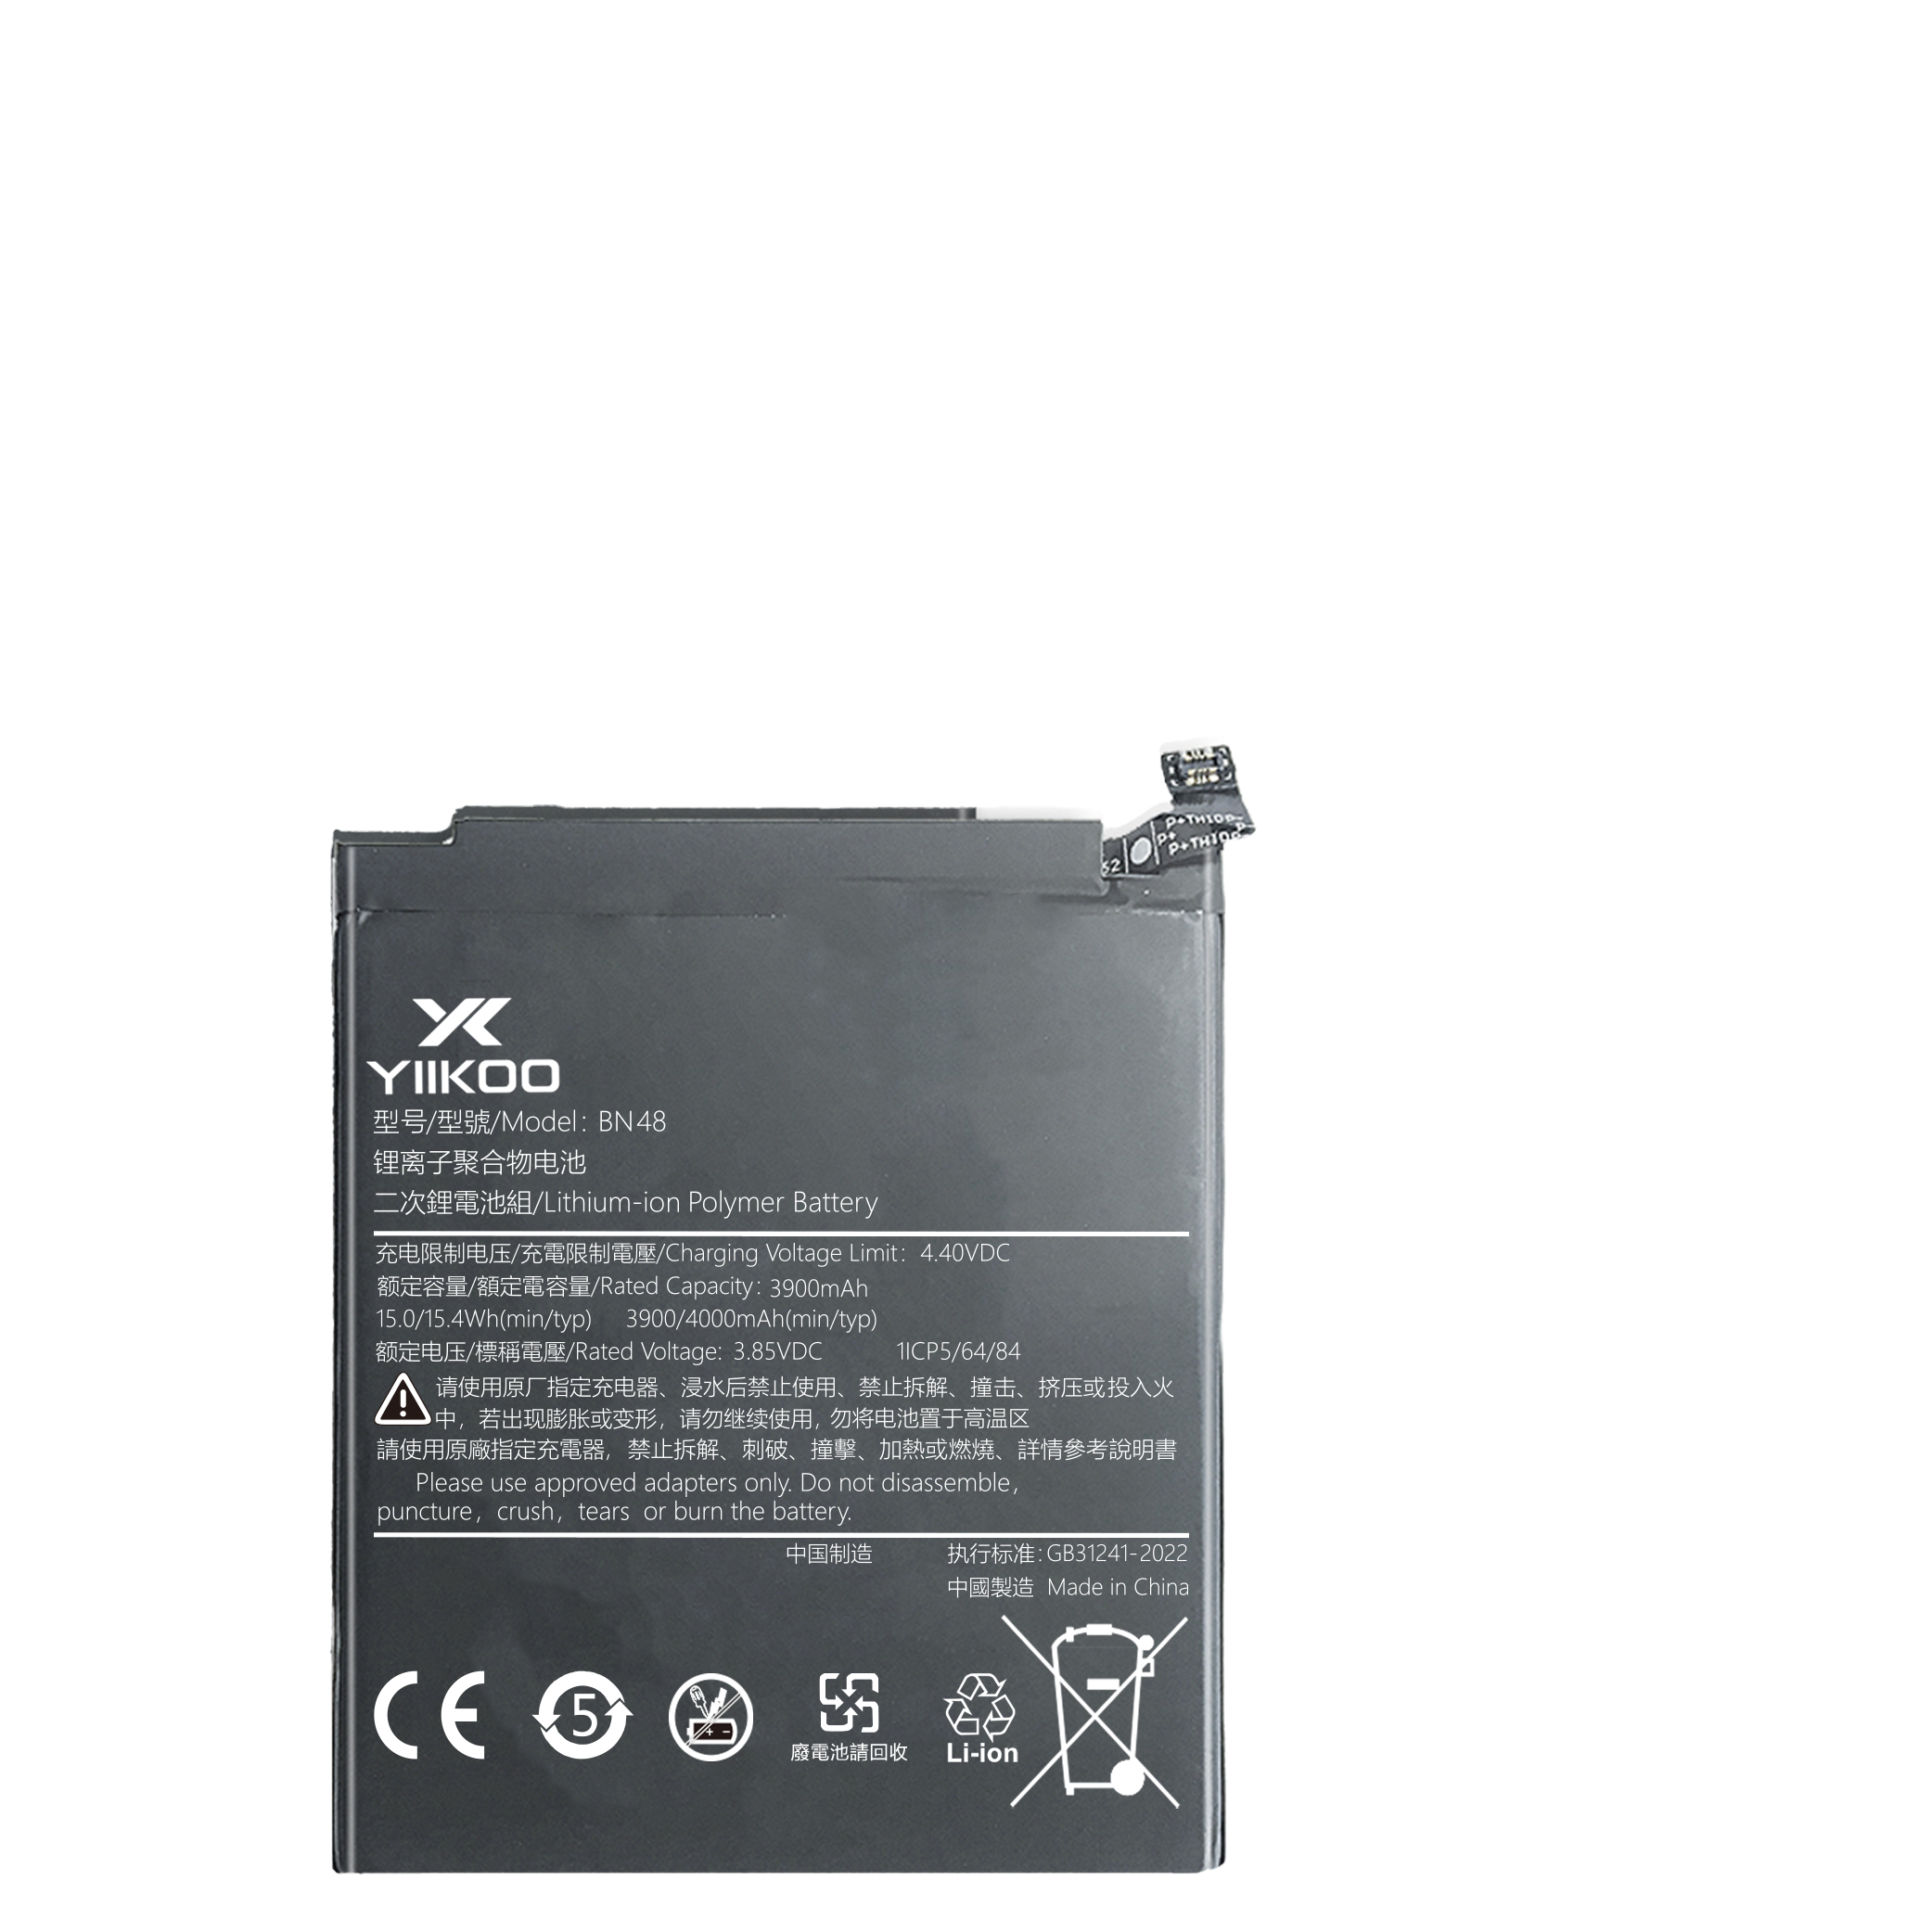 Hongmi 4X Battery (3900mAh) BM47